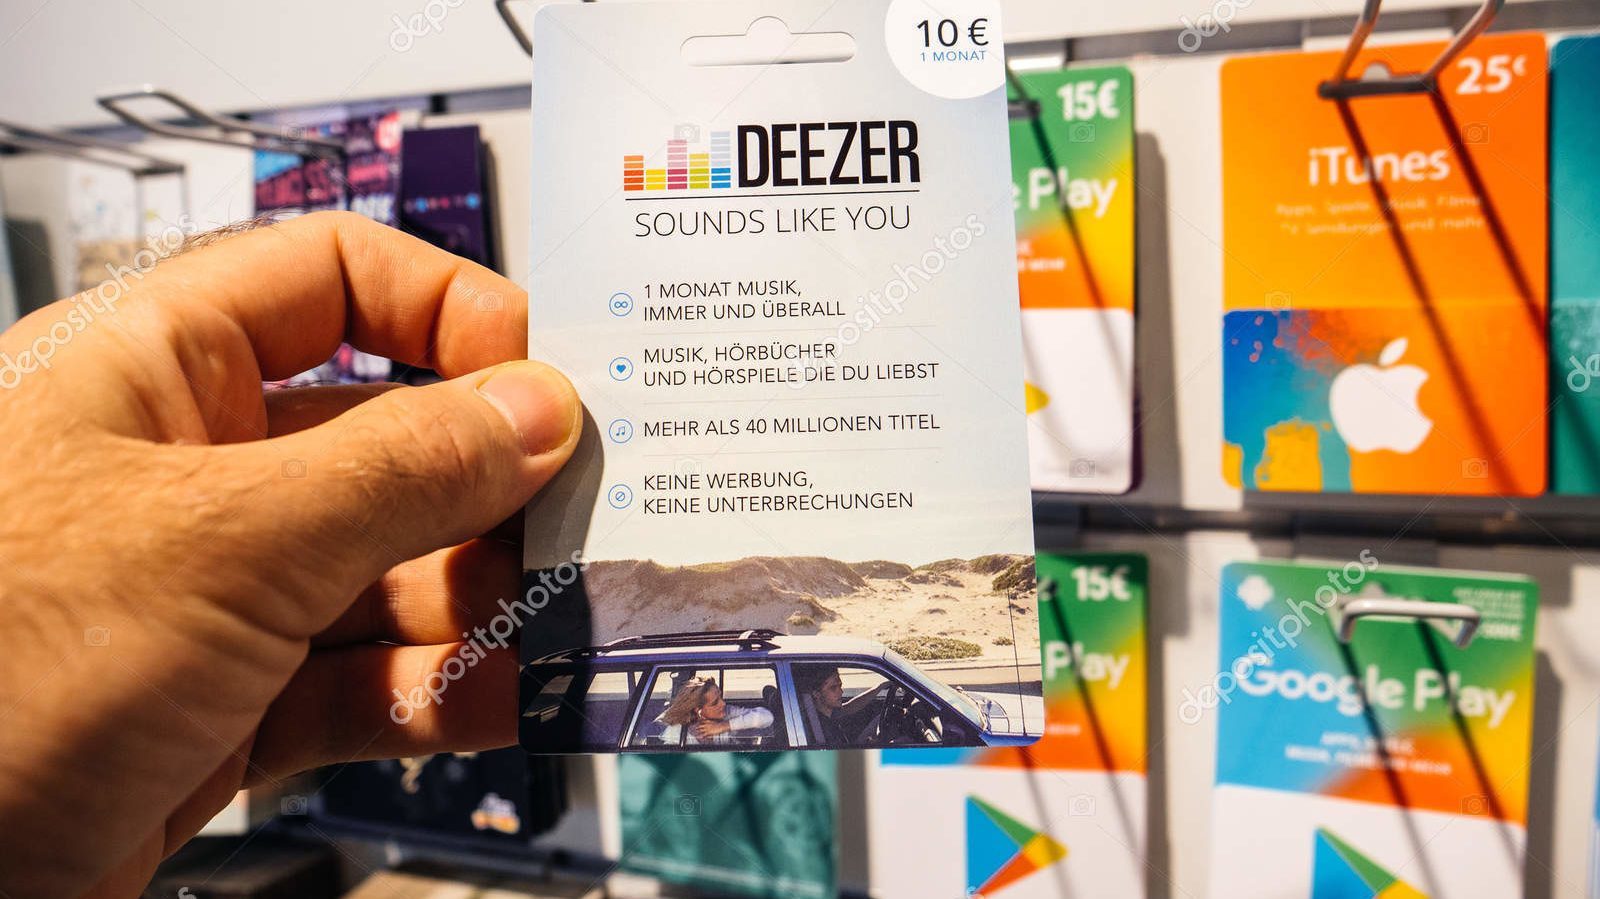 deezer promotional codes